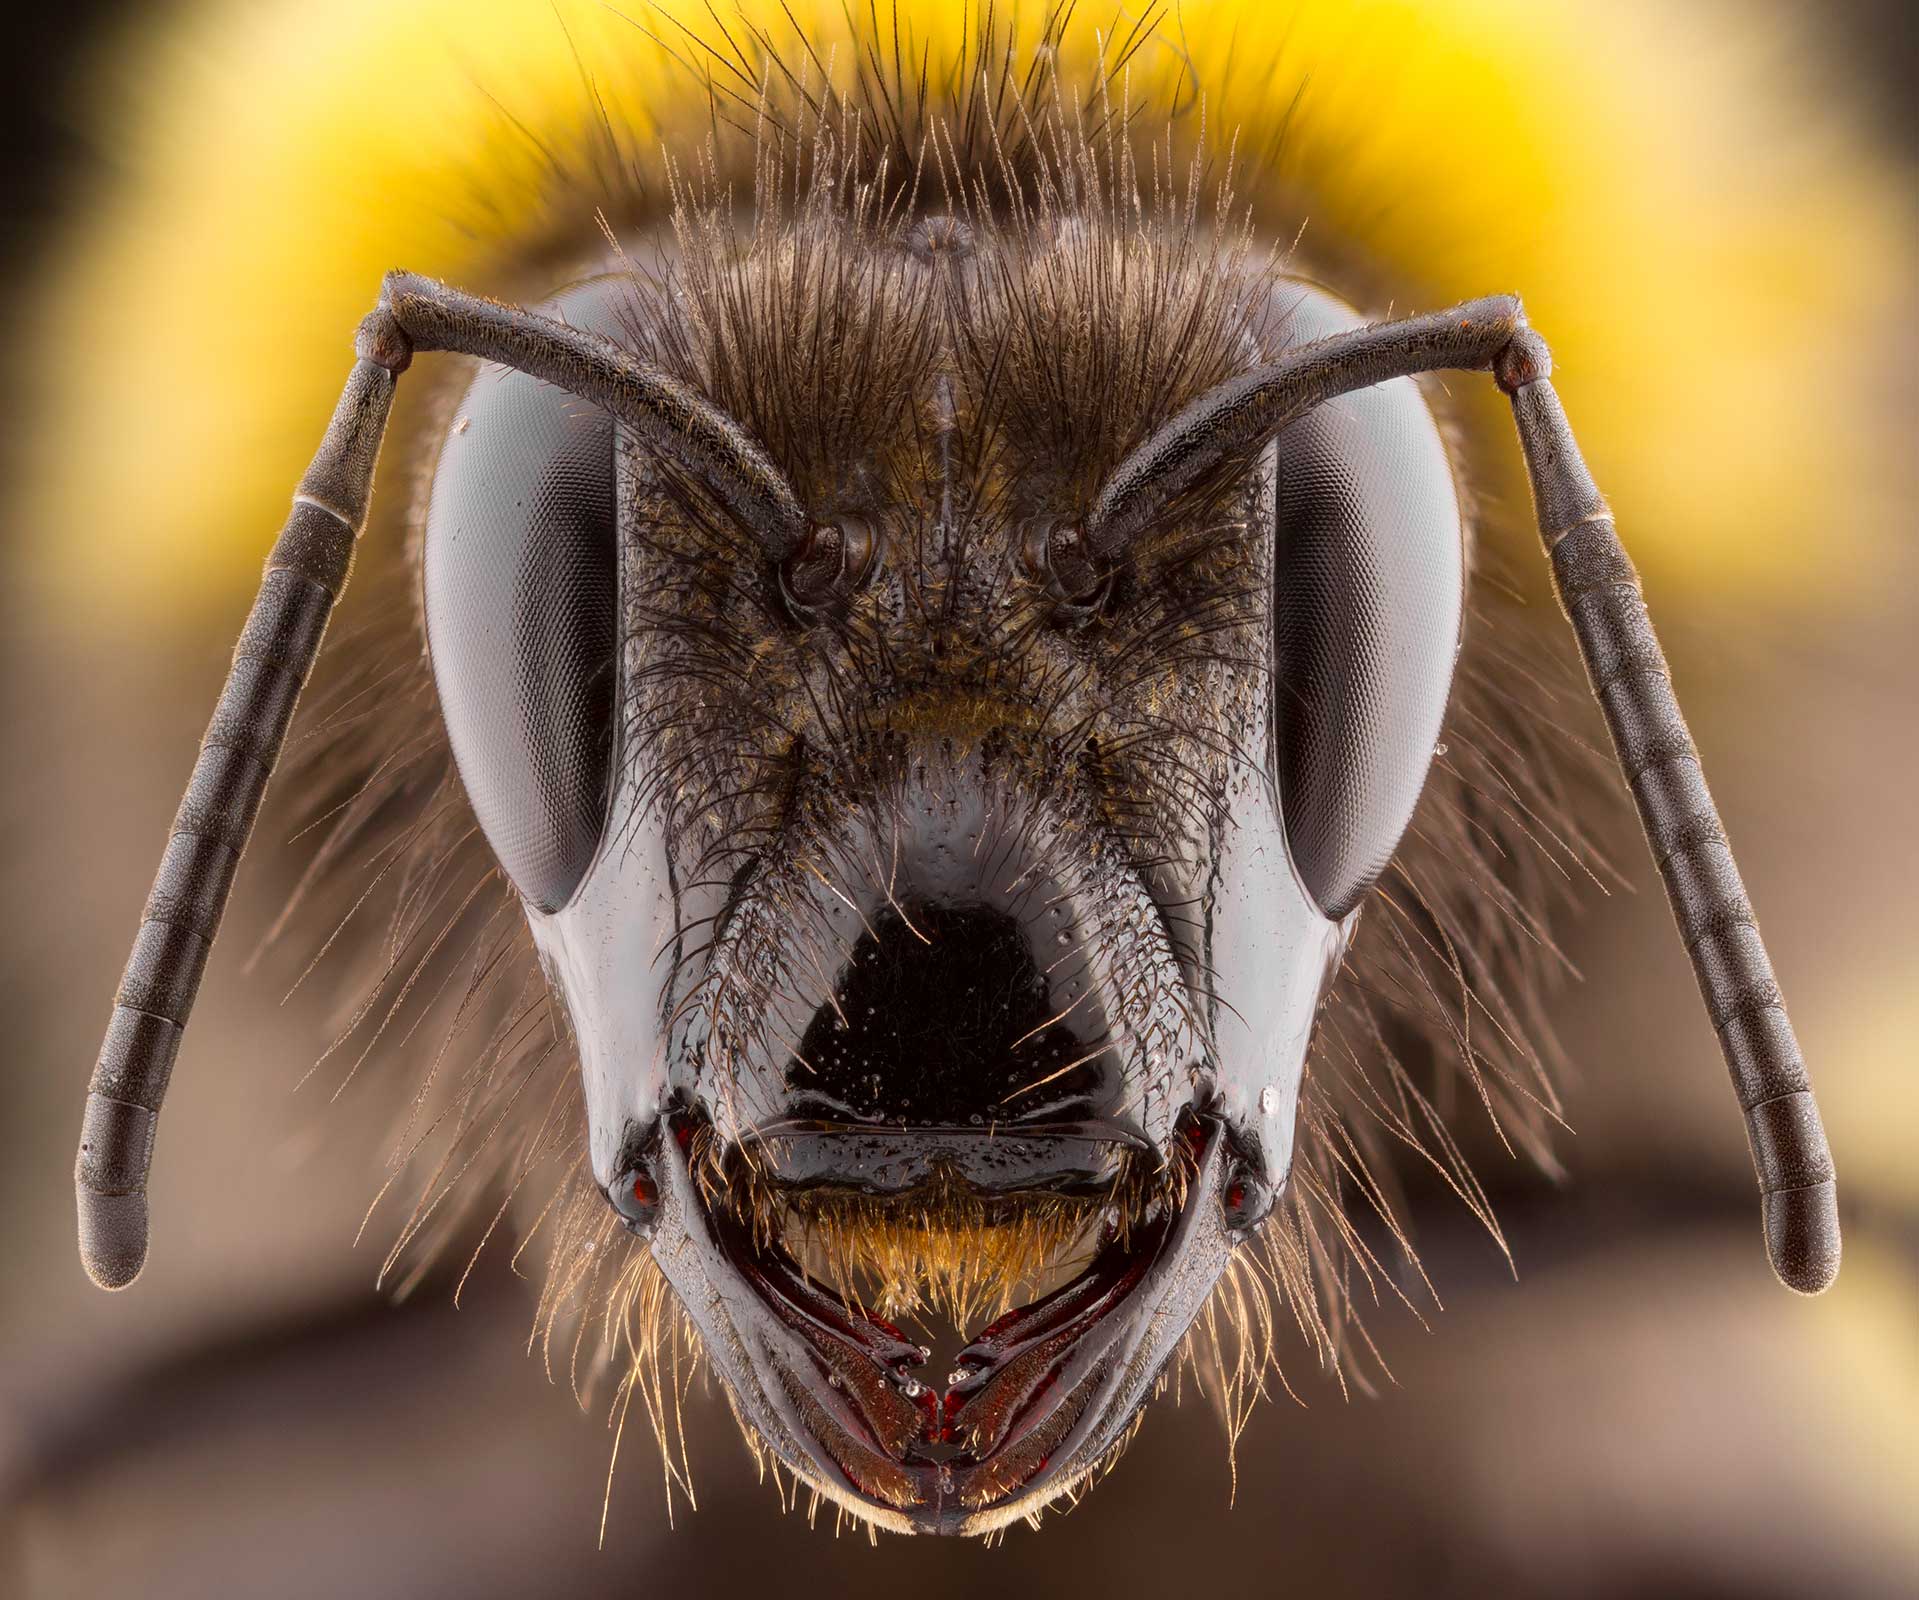 mosquito british wildlife photography award by keith trueman